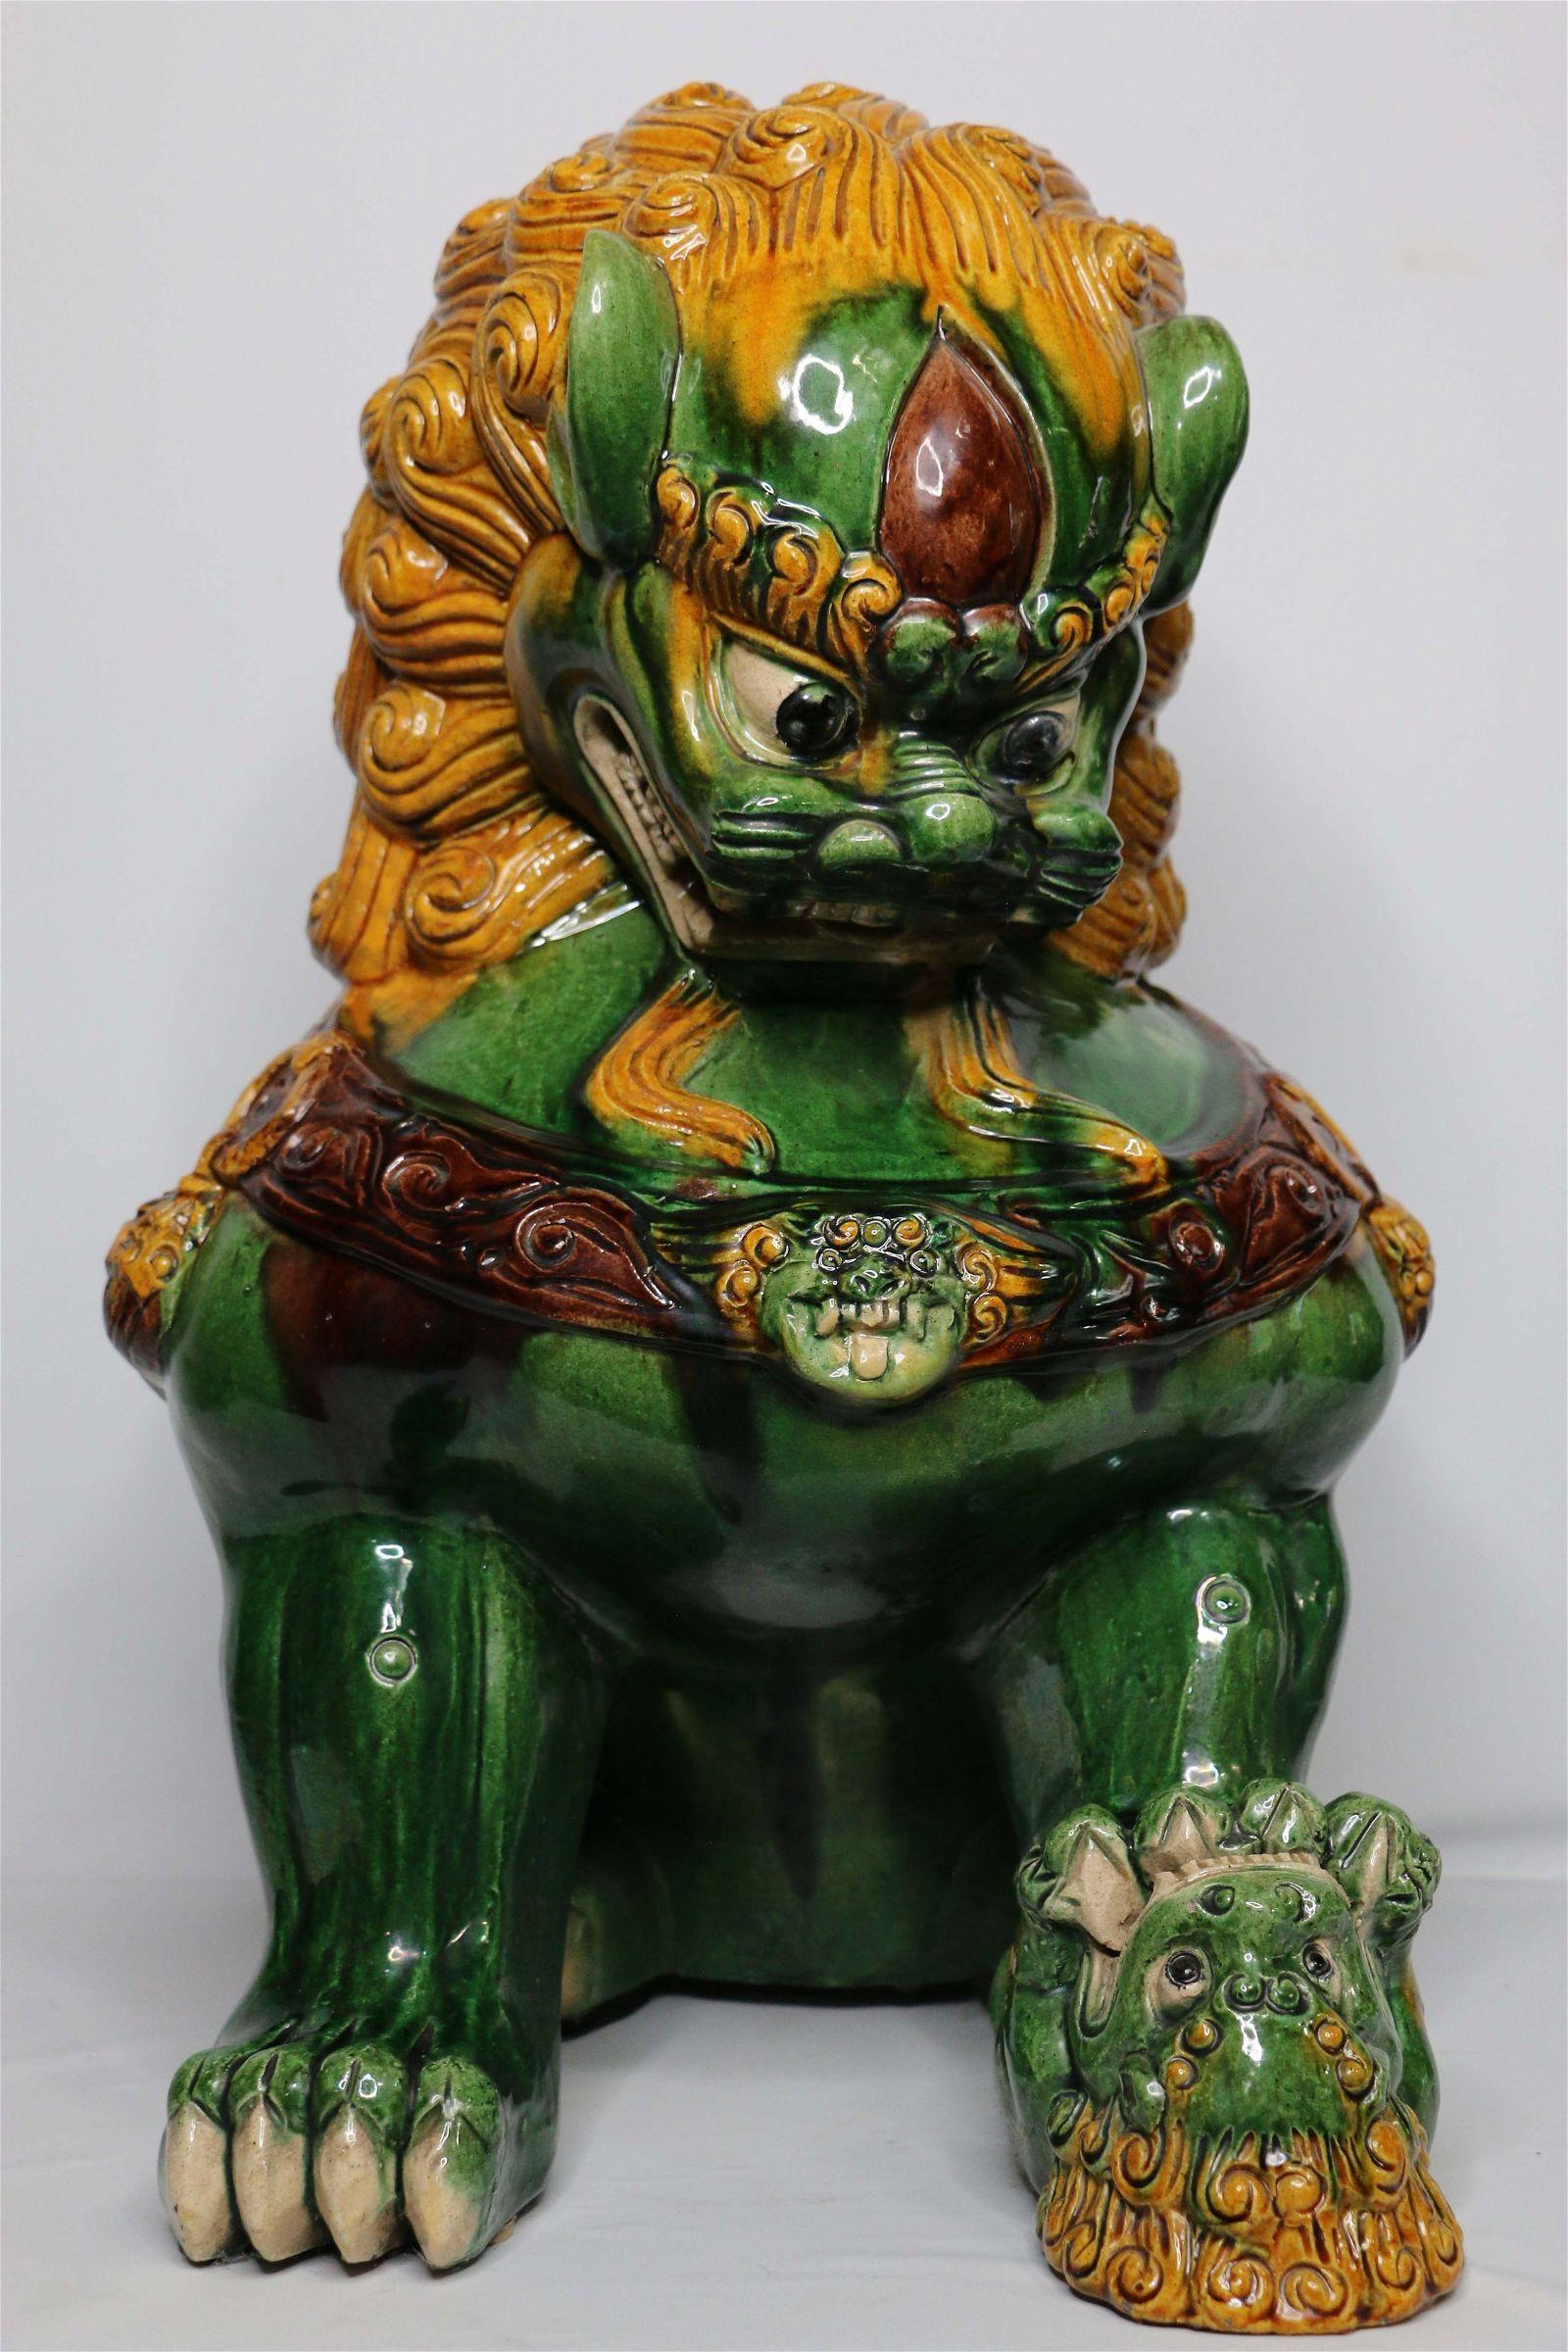 Grand lion chinois Foo. Glaçure à dominante verte avec des détails jaune d'or attribués à la glaçure de la dynastie Tang. Ce chien foo d'une taille inhabituelle affiche un visage féroce. Il tient la 